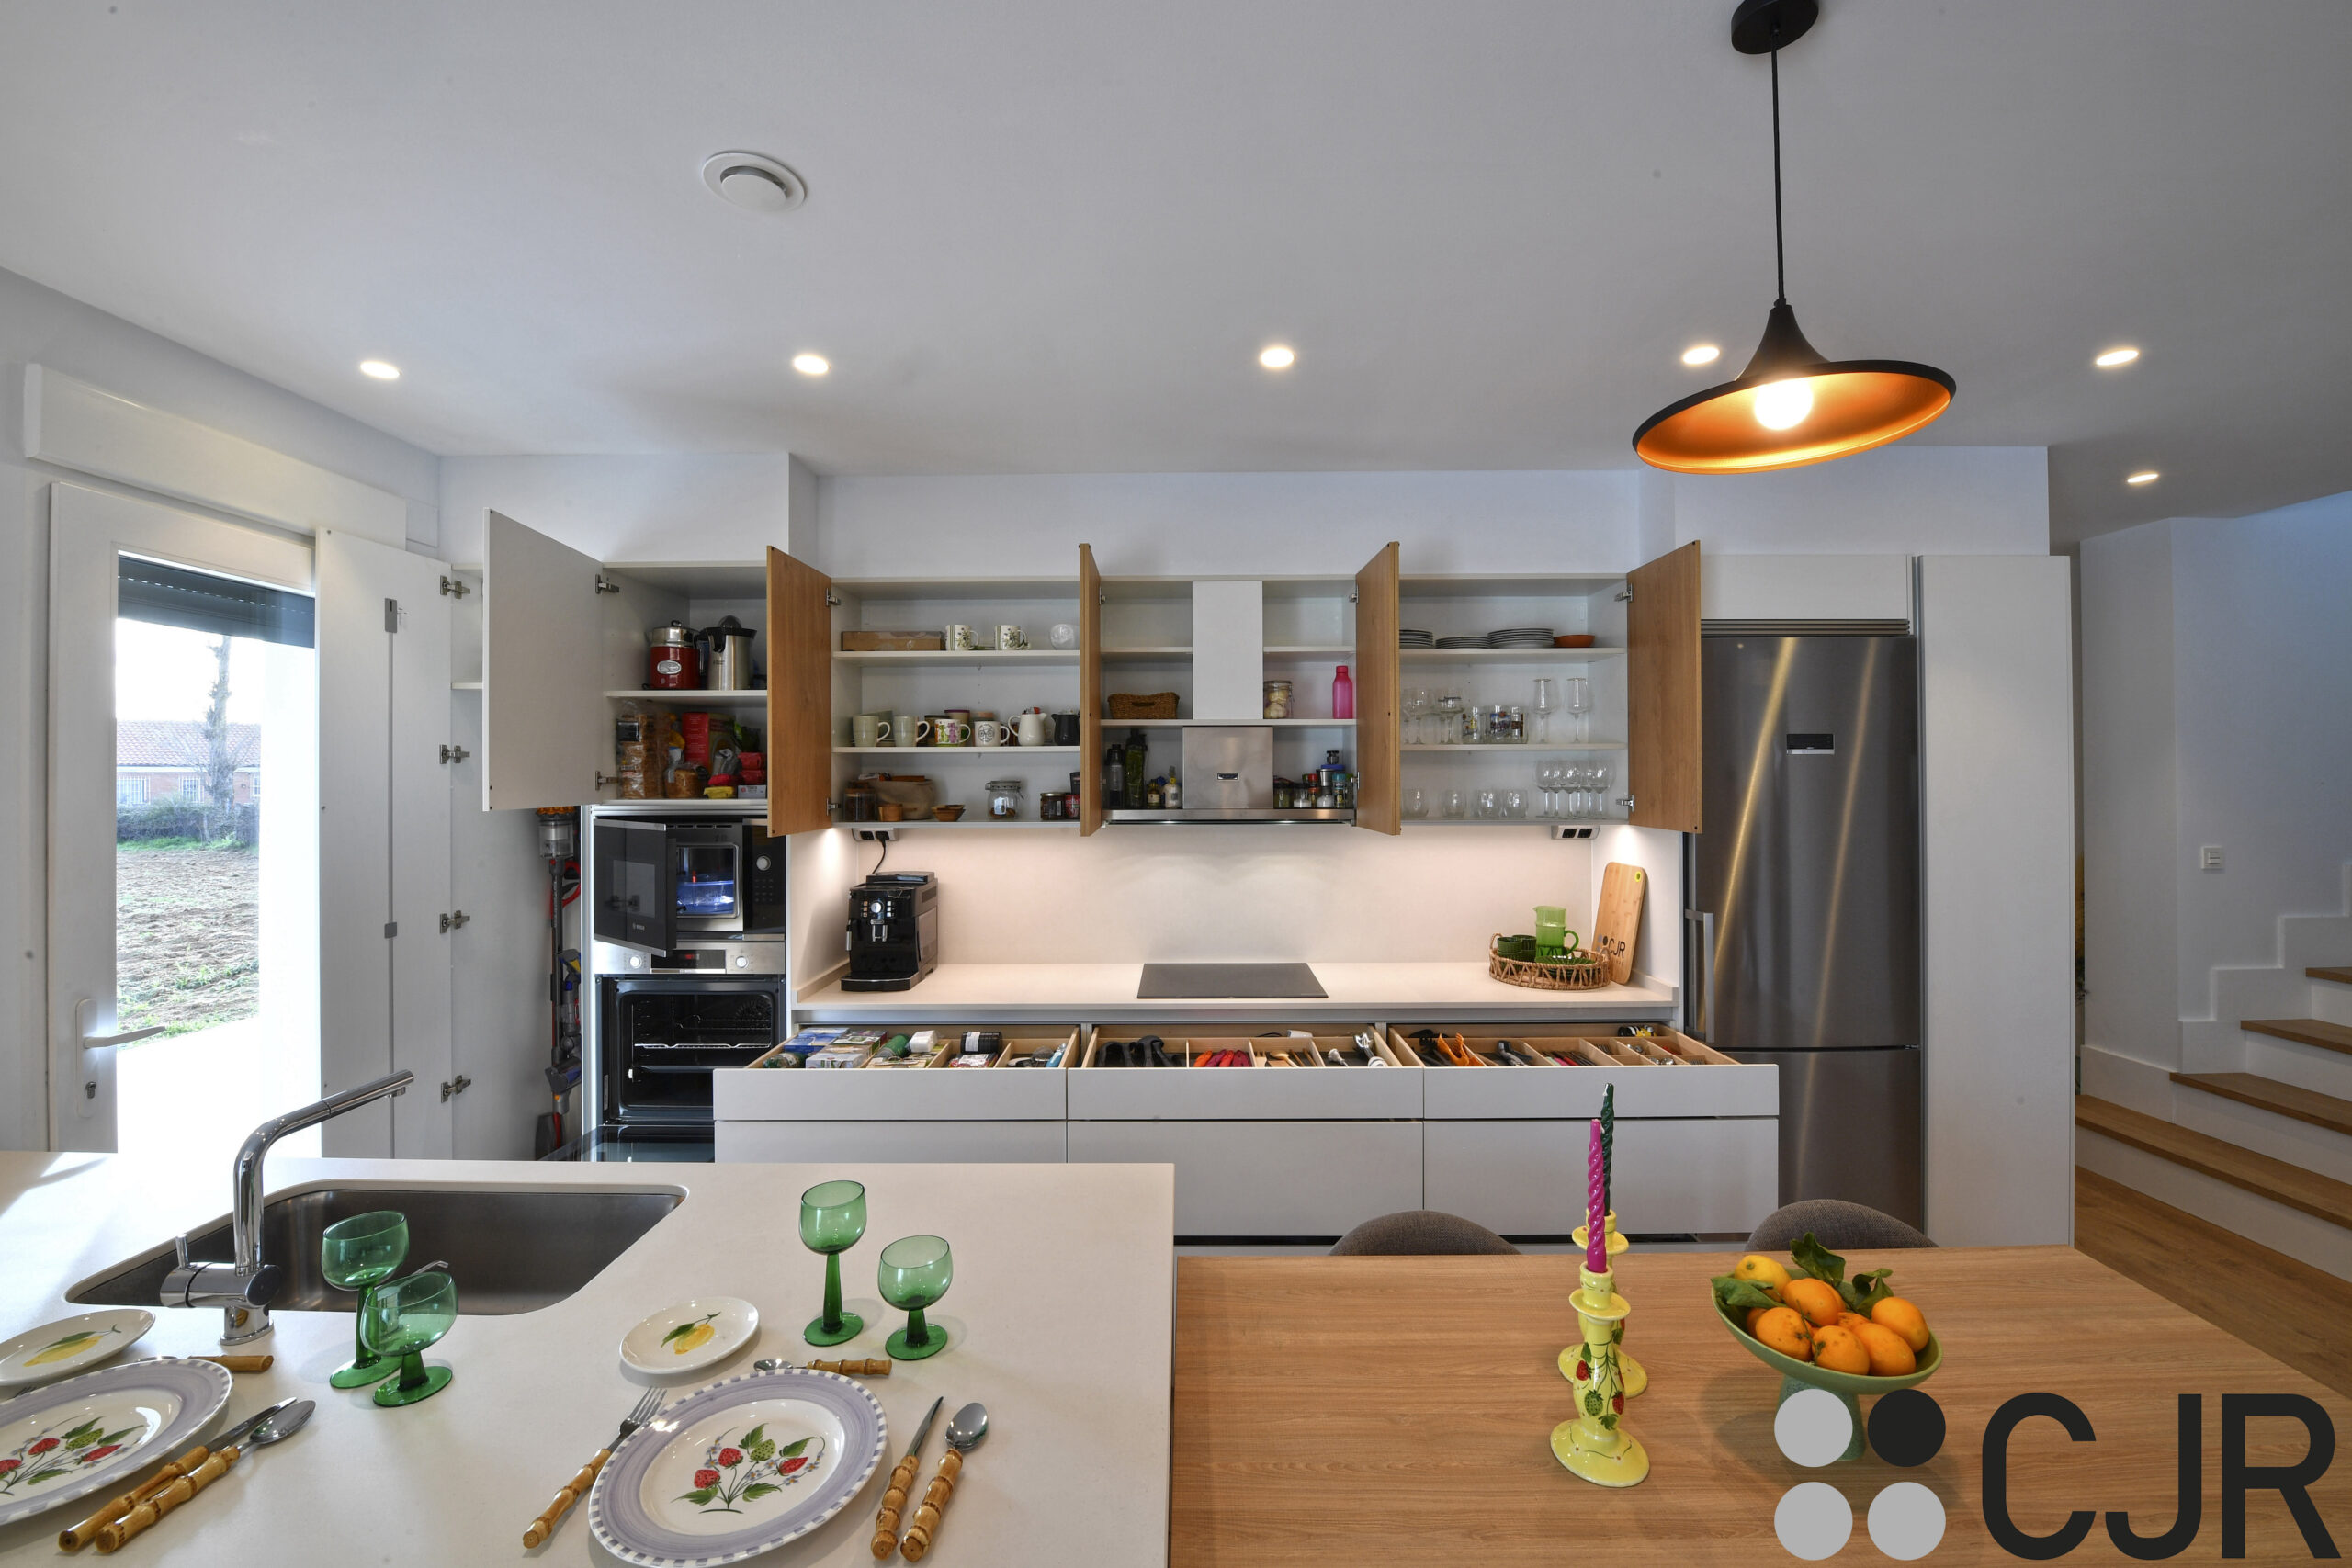 muebles de cocina moderna abierta al salon cocinas cjr